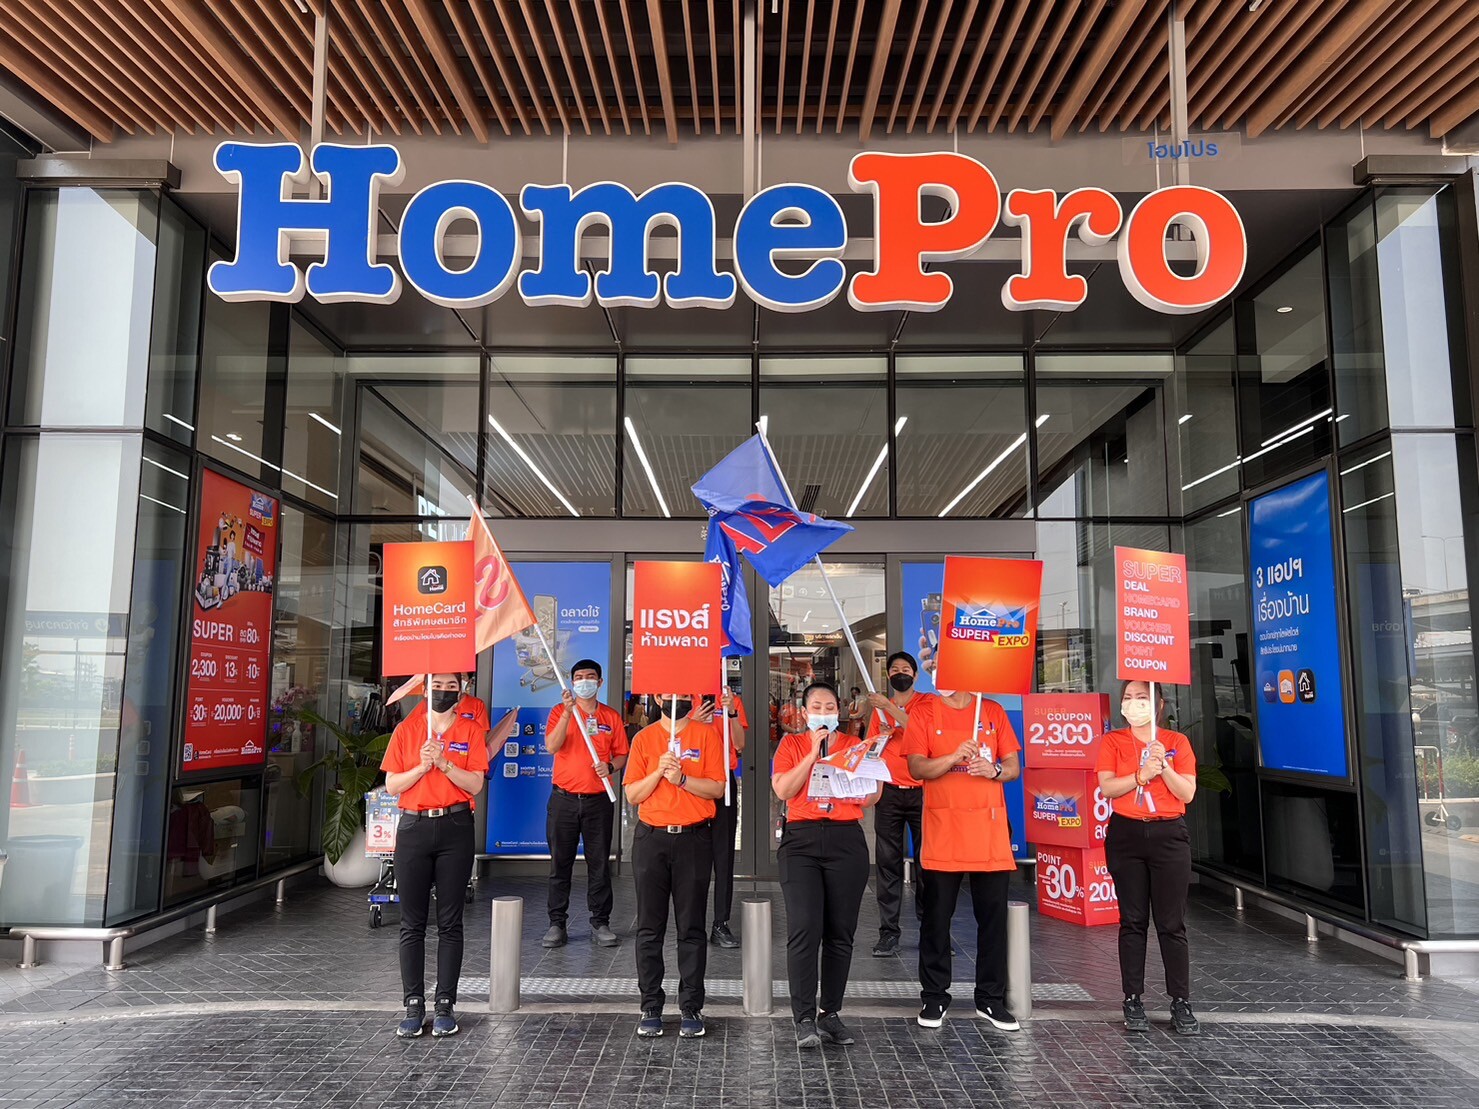 โฮมโปร ปักธงคุ้มทุกองศา จัดงาน "HomePro SUPER EXPO" ลด #แรงส์ห้ามพลาด สูงสุด 80% ดึงกำลังซื้อรับซัมเมอร์ 5 - 9 เม.ย. 66 นี้ 5 วันเท่านั้น!! ที่โฮมโปรทุกสาขา ทั่วประเทศ และออนไลน์